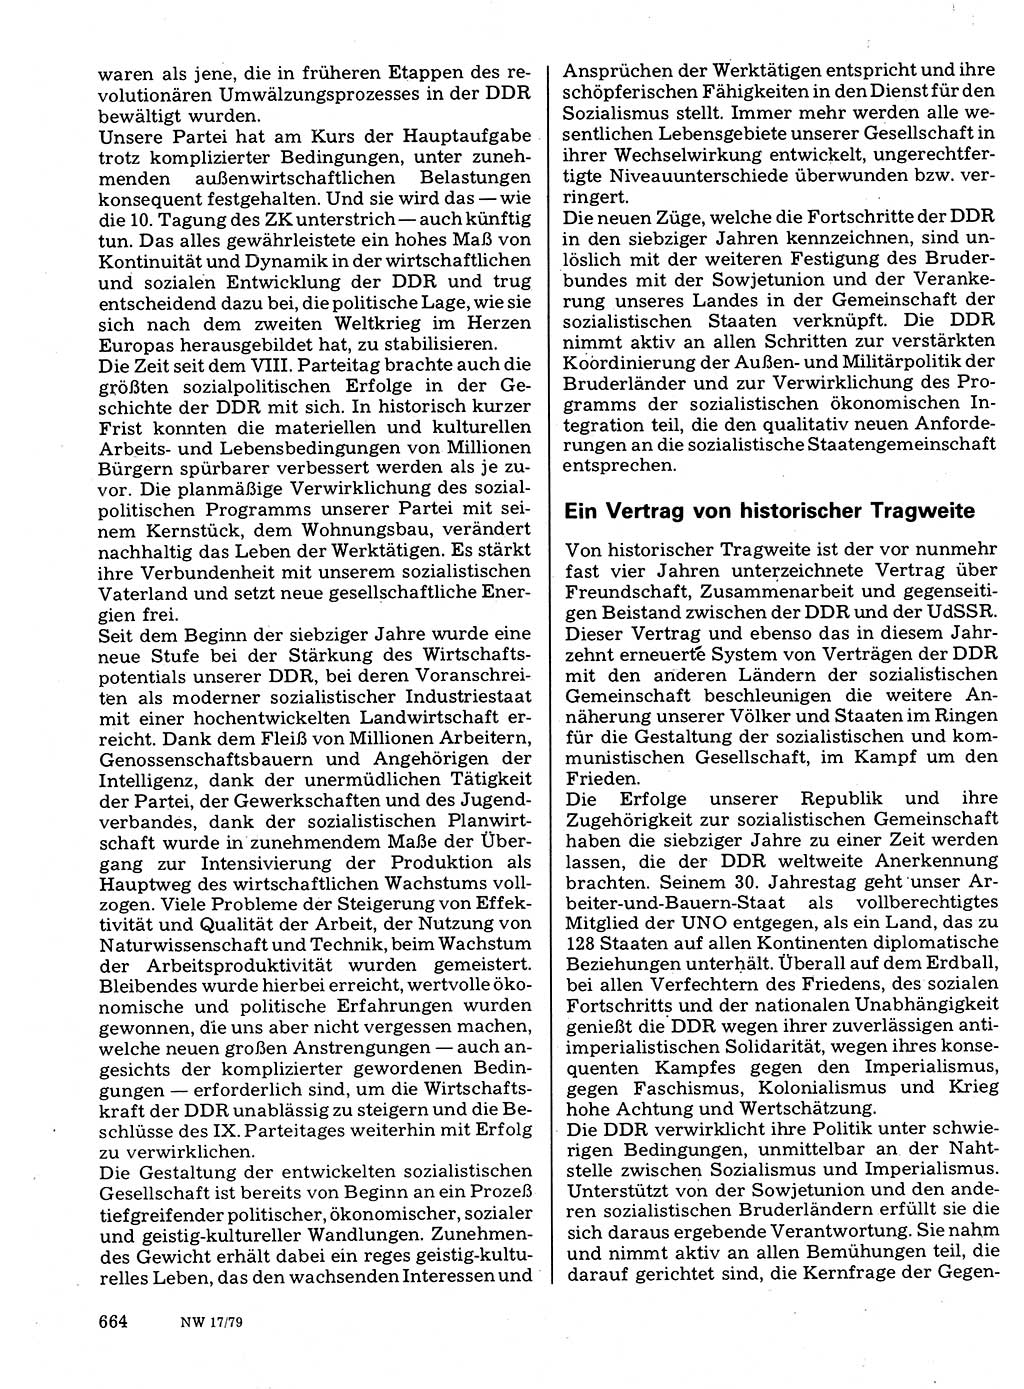 Neuer Weg (NW), Organ des Zentralkomitees (ZK) der SED (Sozialistische Einheitspartei Deutschlands) für Fragen des Parteilebens, 34. Jahrgang [Deutsche Demokratische Republik (DDR)] 1979, Seite 664 (NW ZK SED DDR 1979, S. 664)